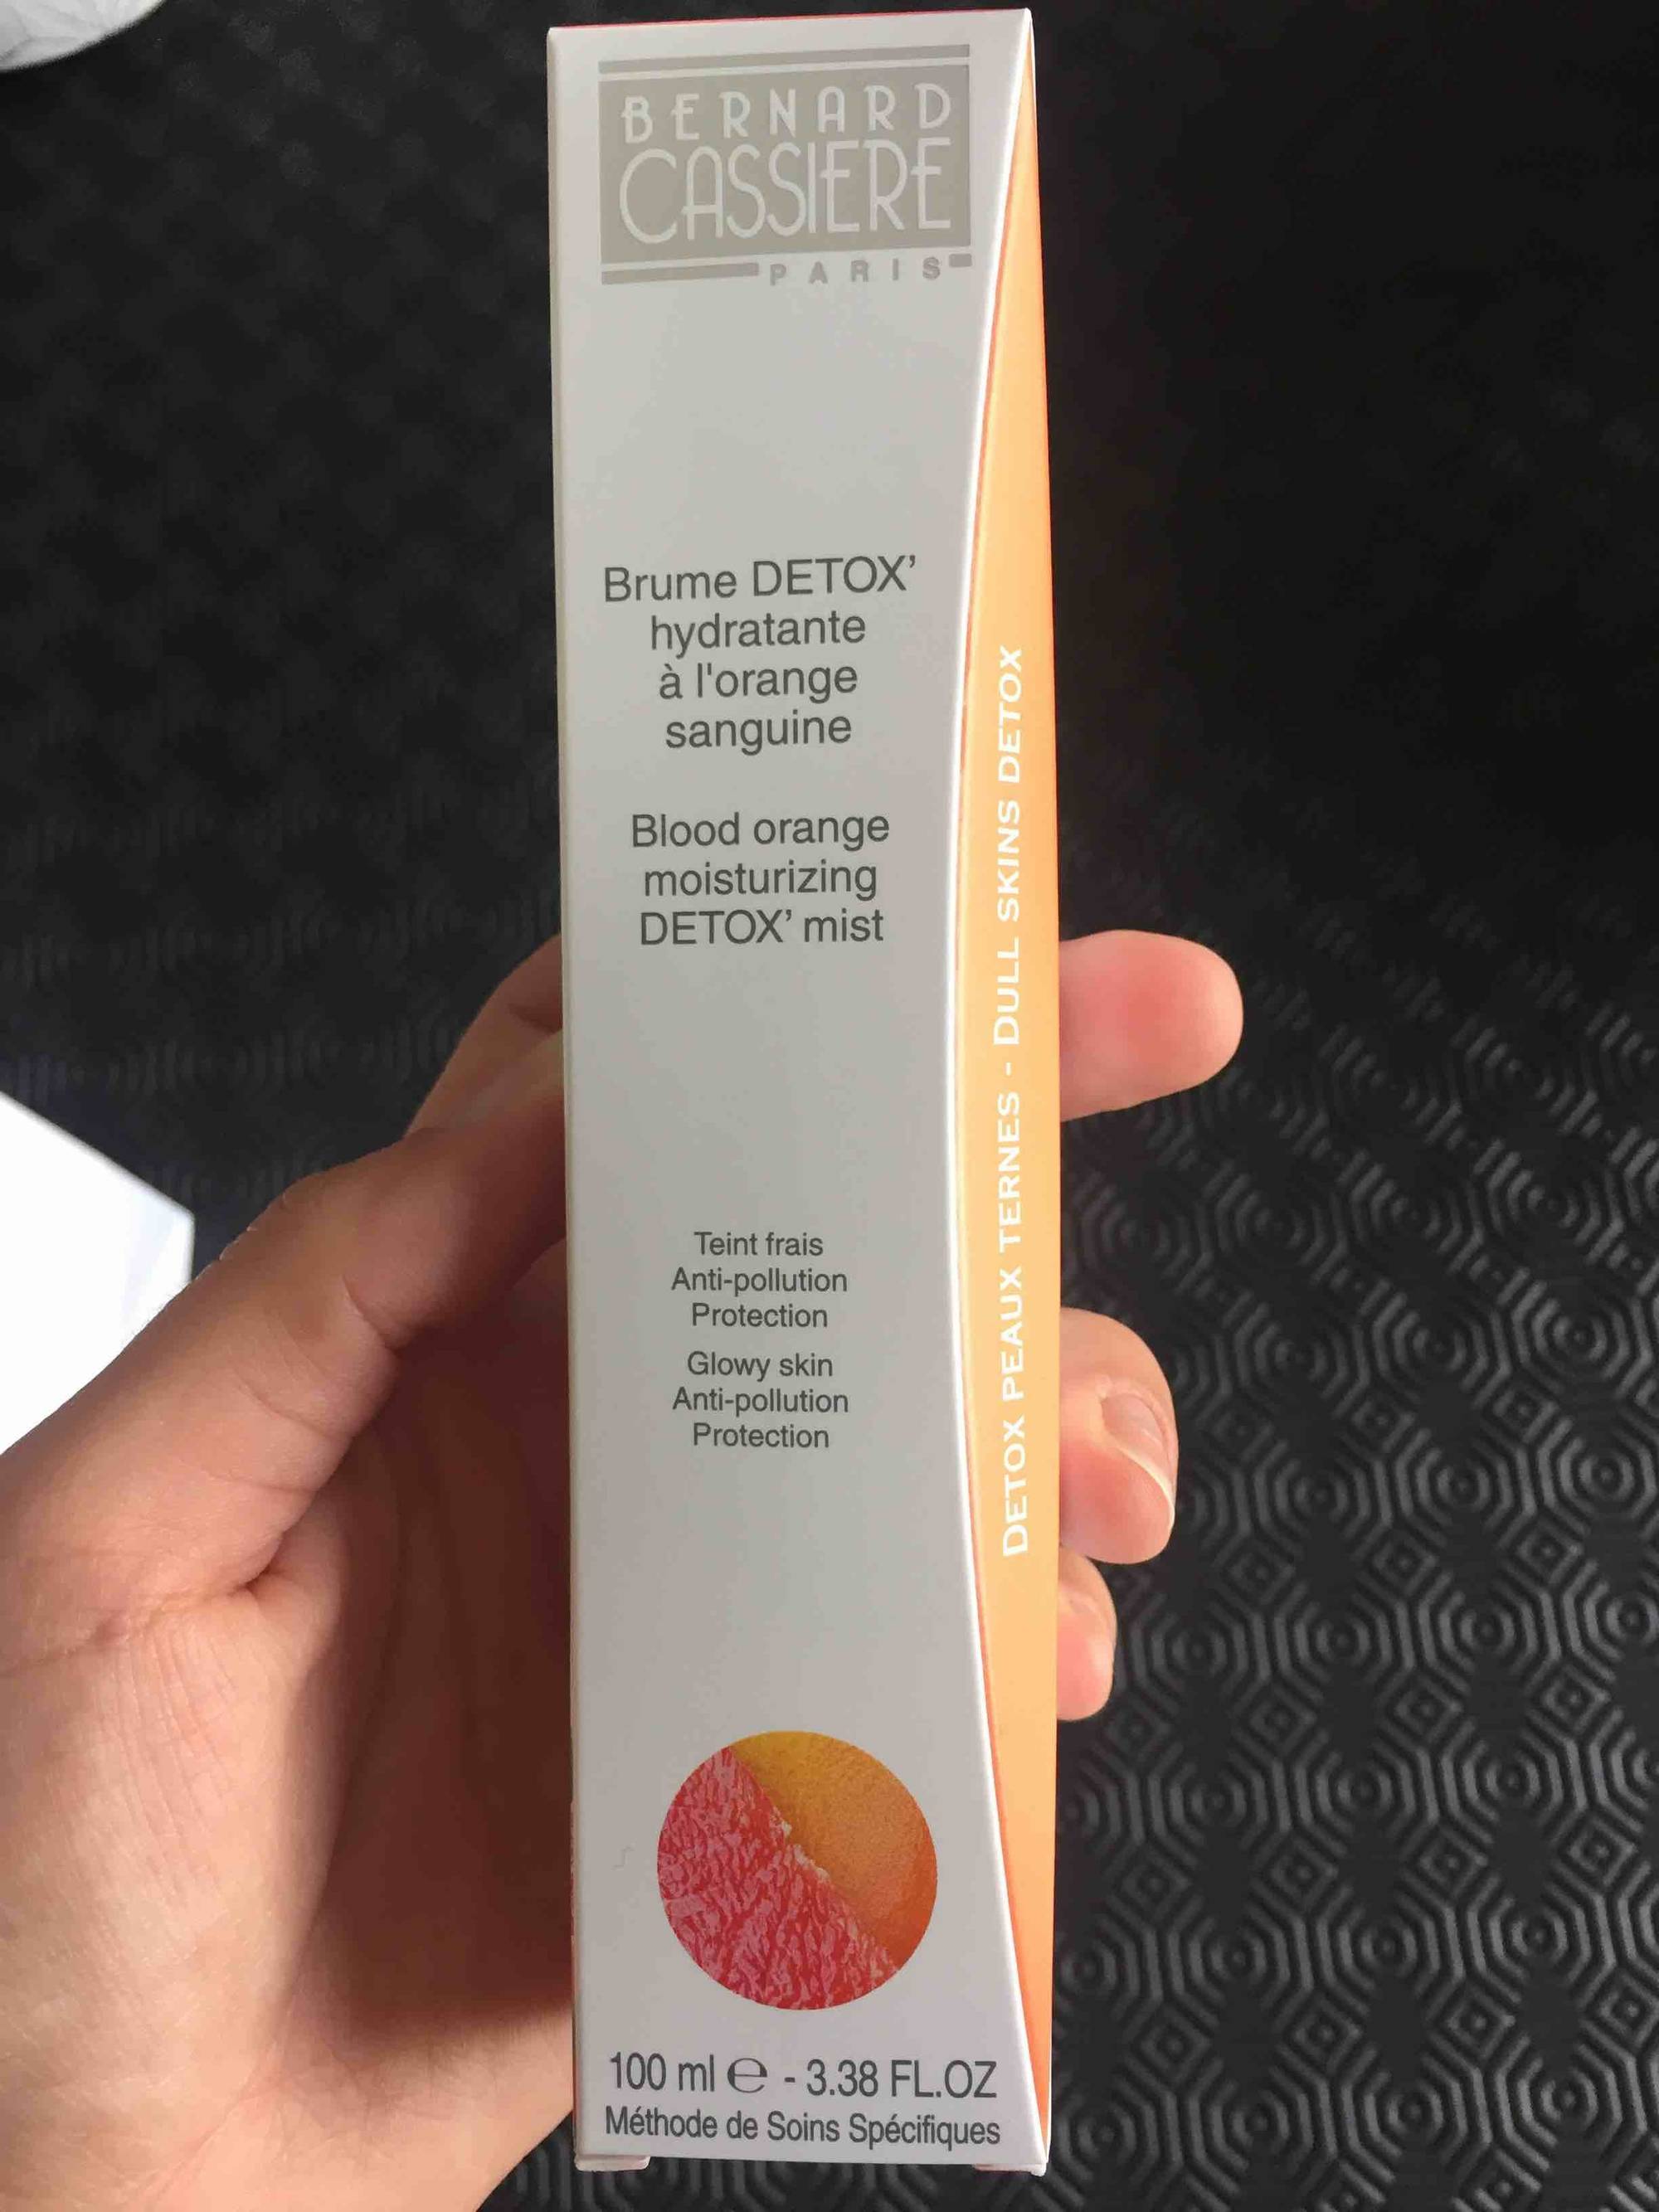 BERNARD CASSIÈRE - Brume detox' hydratante à l'orange sanguine